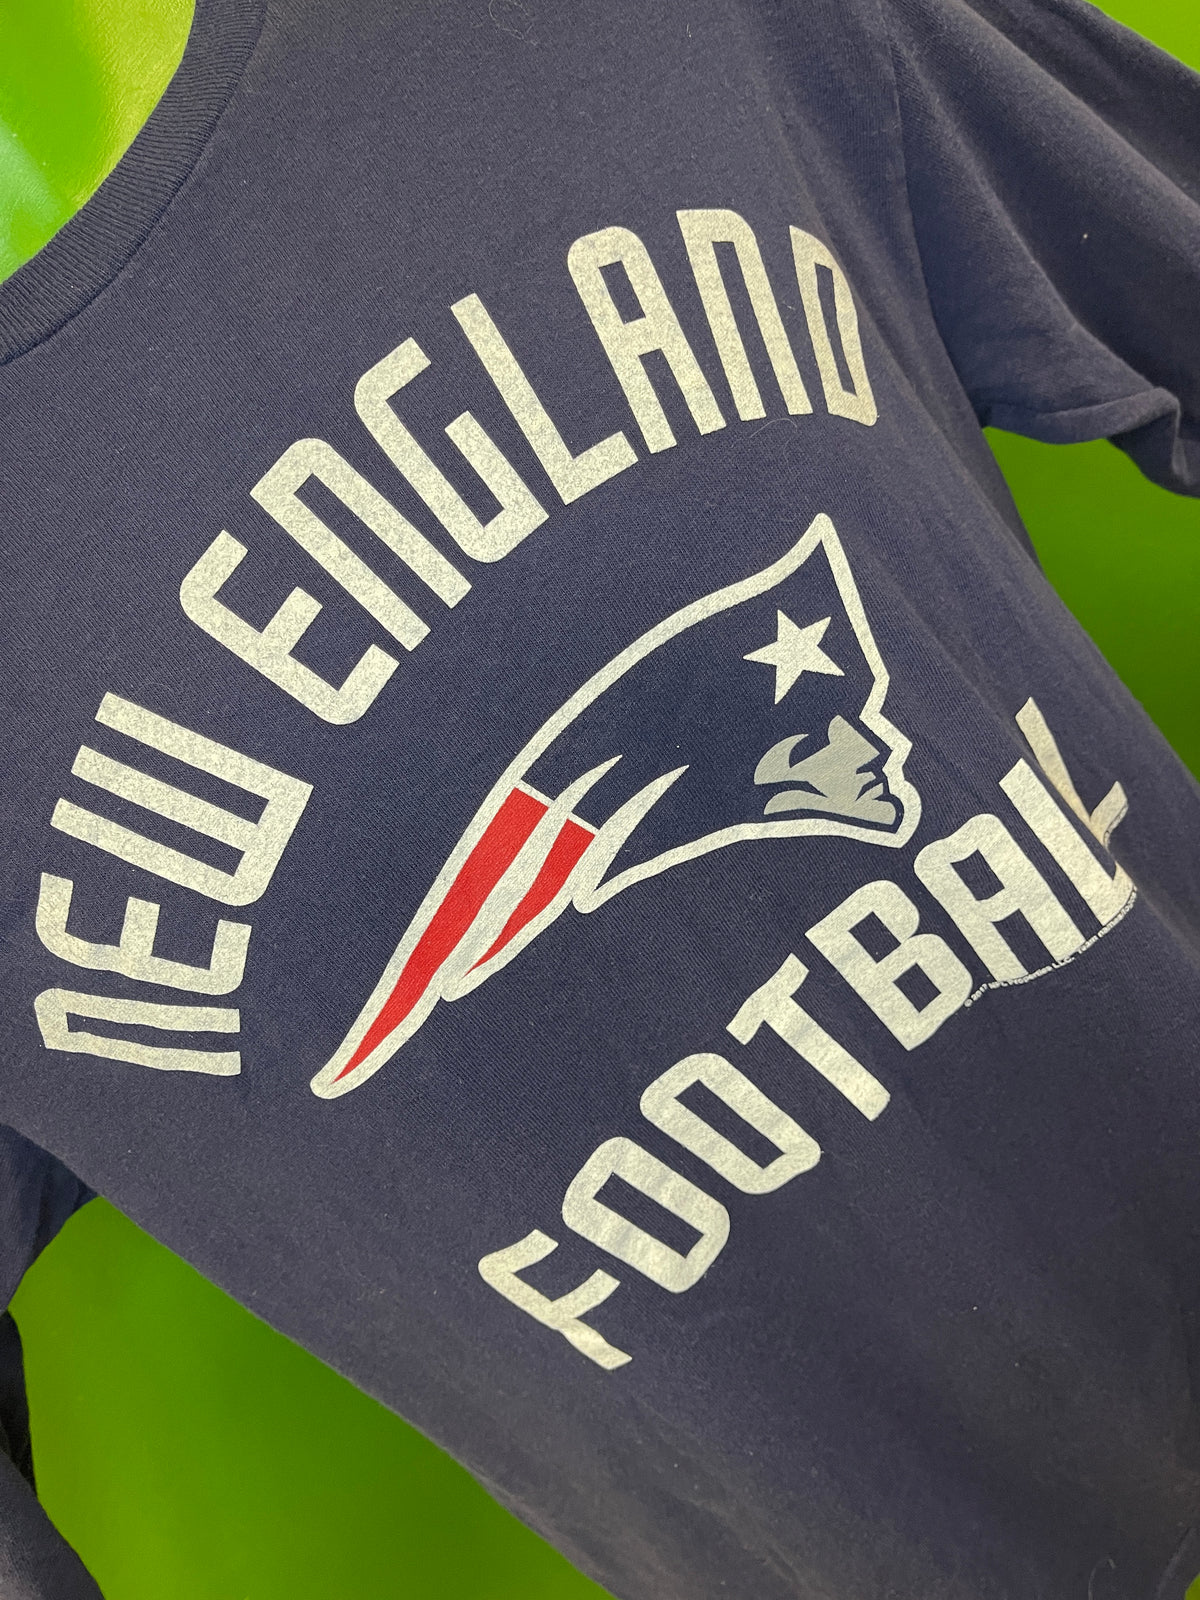 NFL New England Patriots 100% Cotton L/S T-Shirt Men's Medium